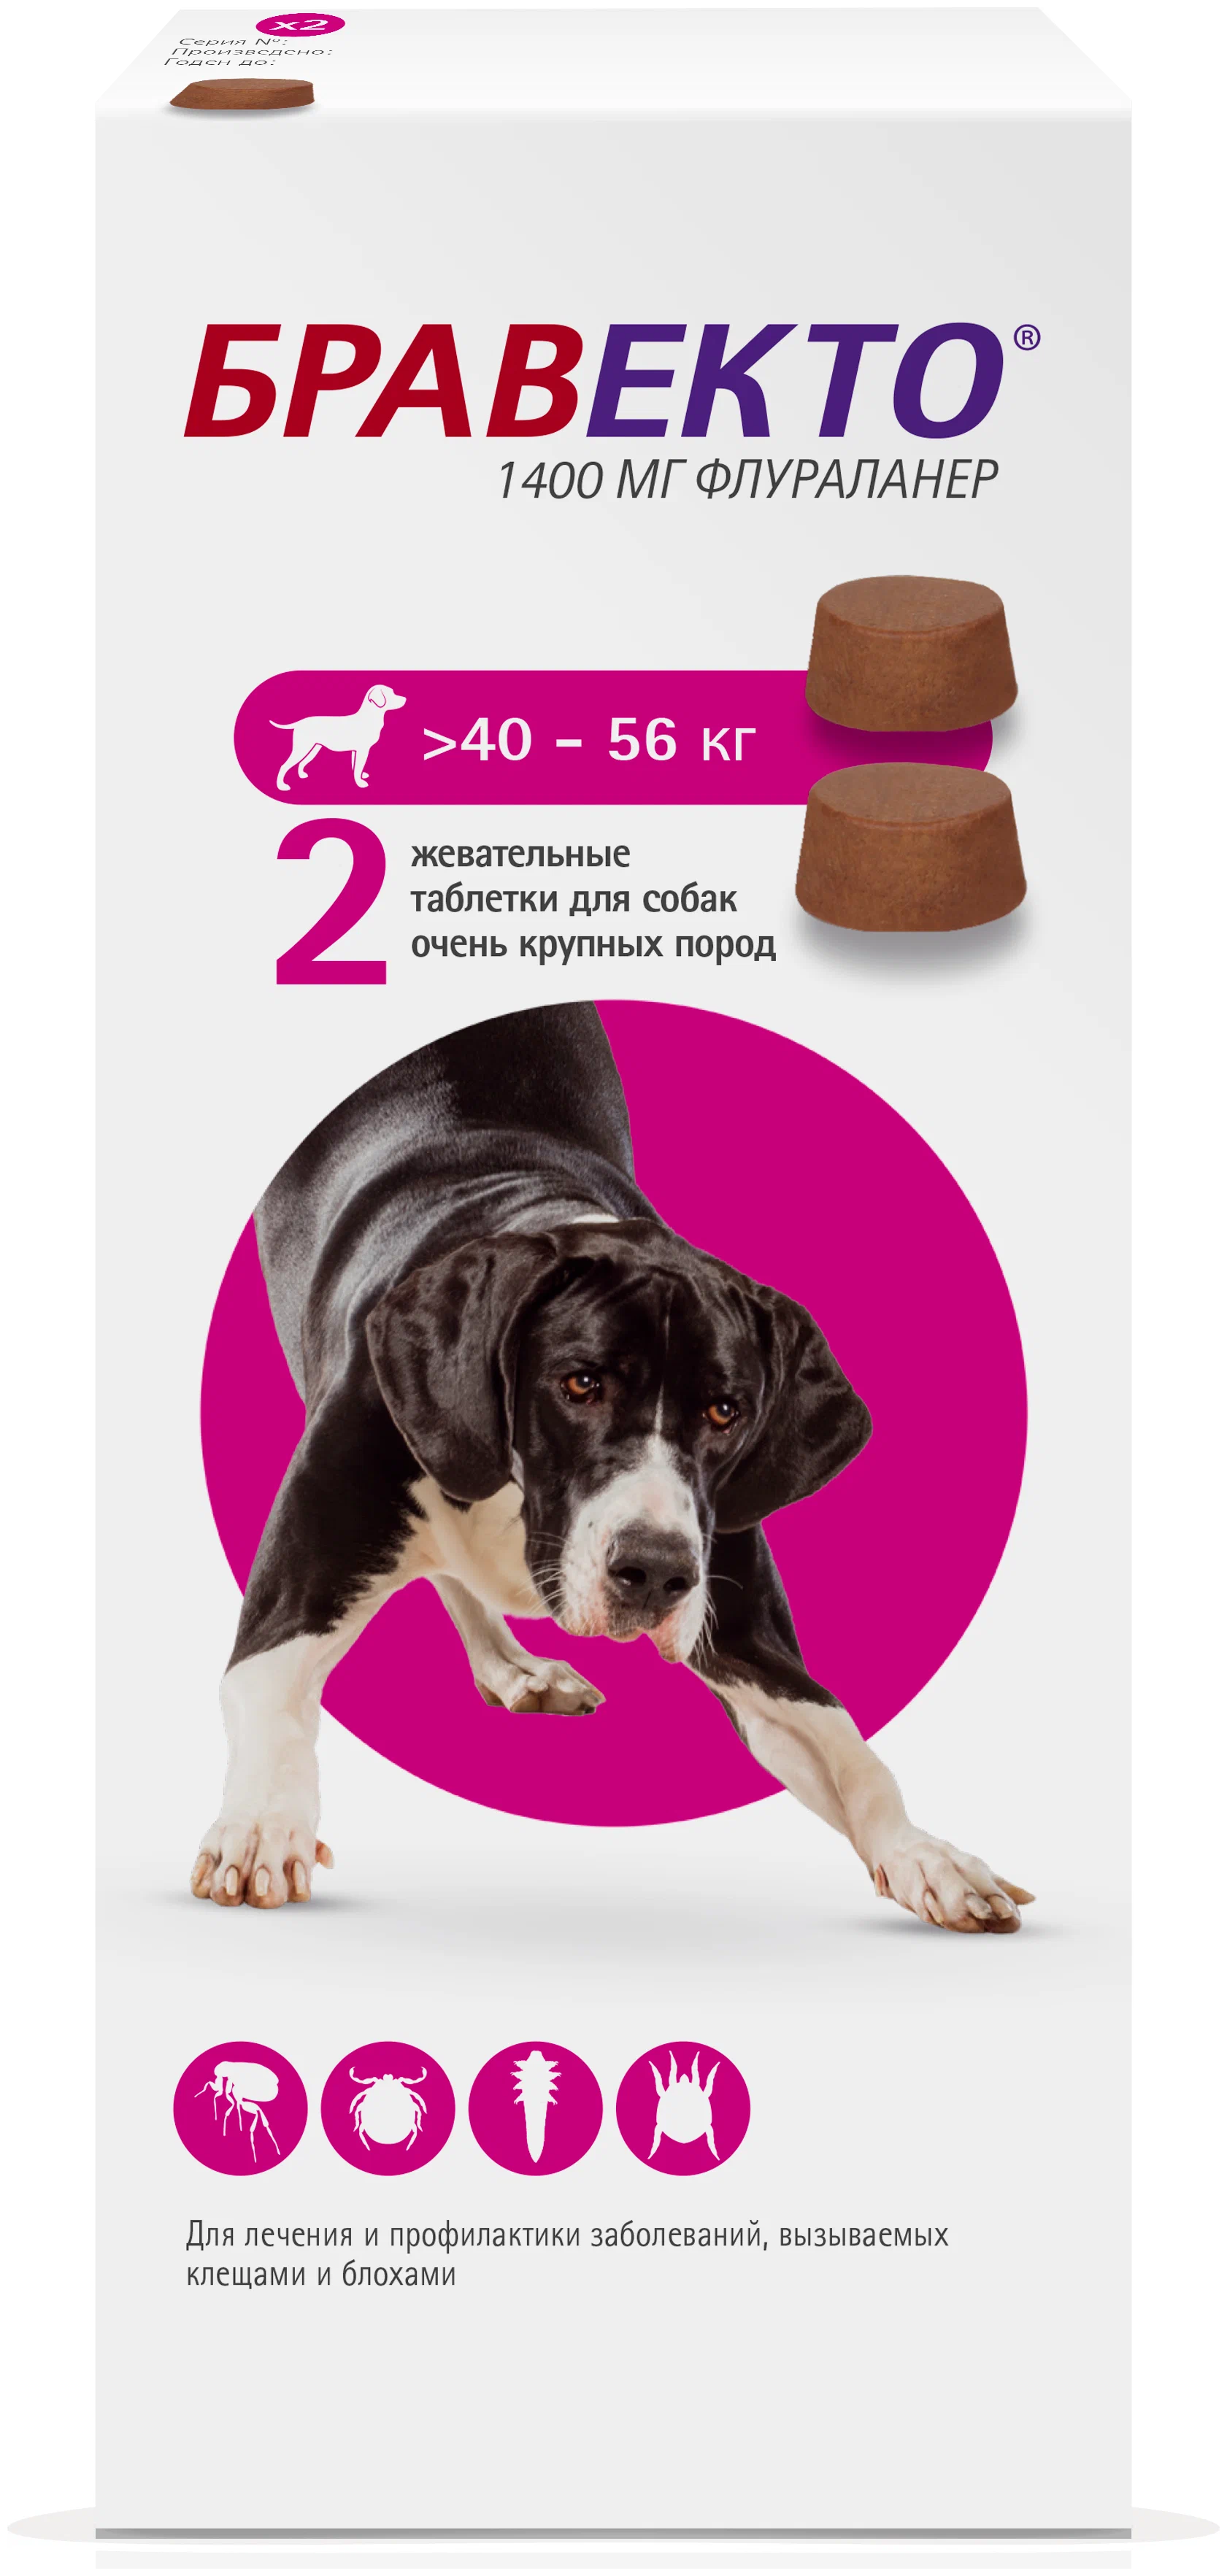 Бравекто 1400мг таблетка инсектоакарицидная д/собак 40-56кг. Бравекто таблетки для собак 40-56. Бравекто 1400 мг д/собак 40-56 кг. Бравекто для собак 40-56 2.